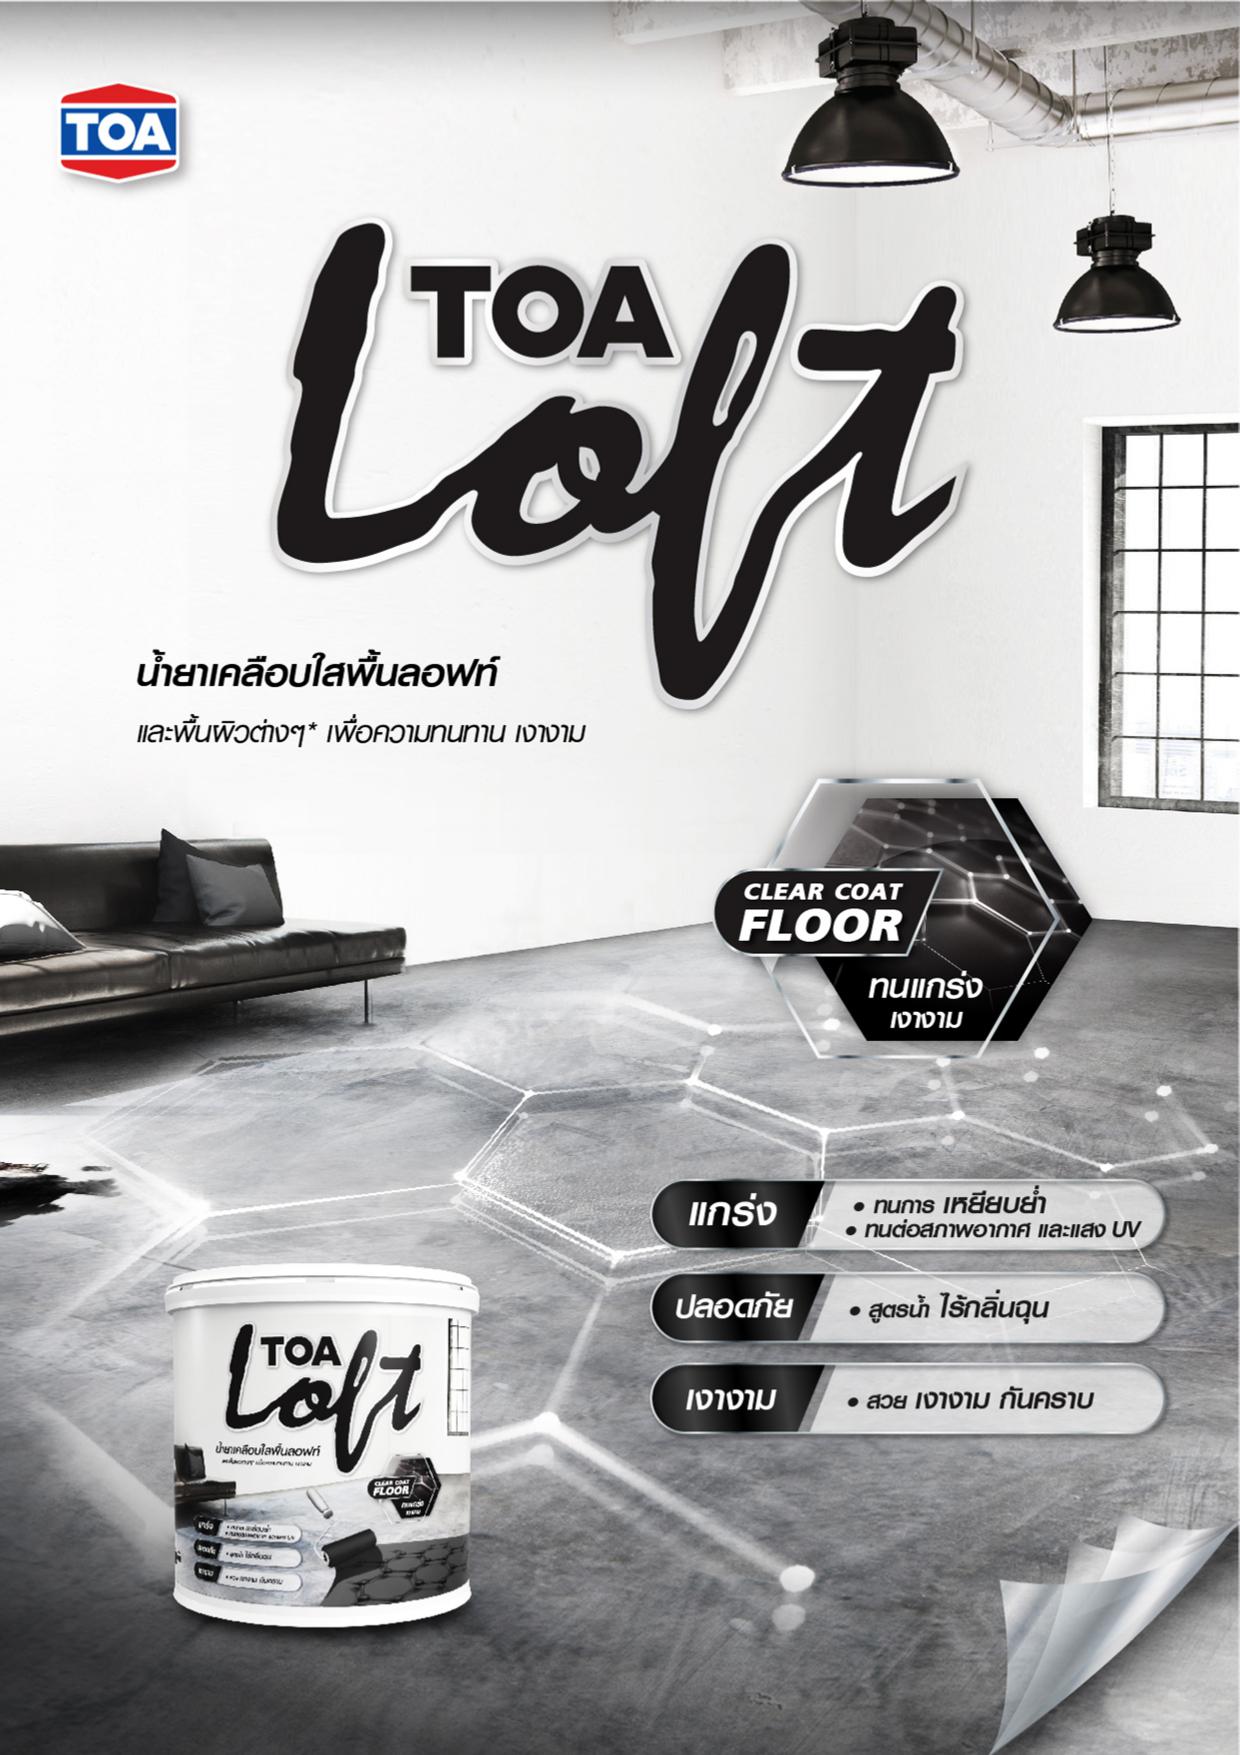 ทีโอเอ ลอฟท์ เคลียร์ โค้ท ฟลอร์ (3กก.)น้ำยาเคลือบใสพื้นลอฟท์ / TOA Loft Clear Coat Floor